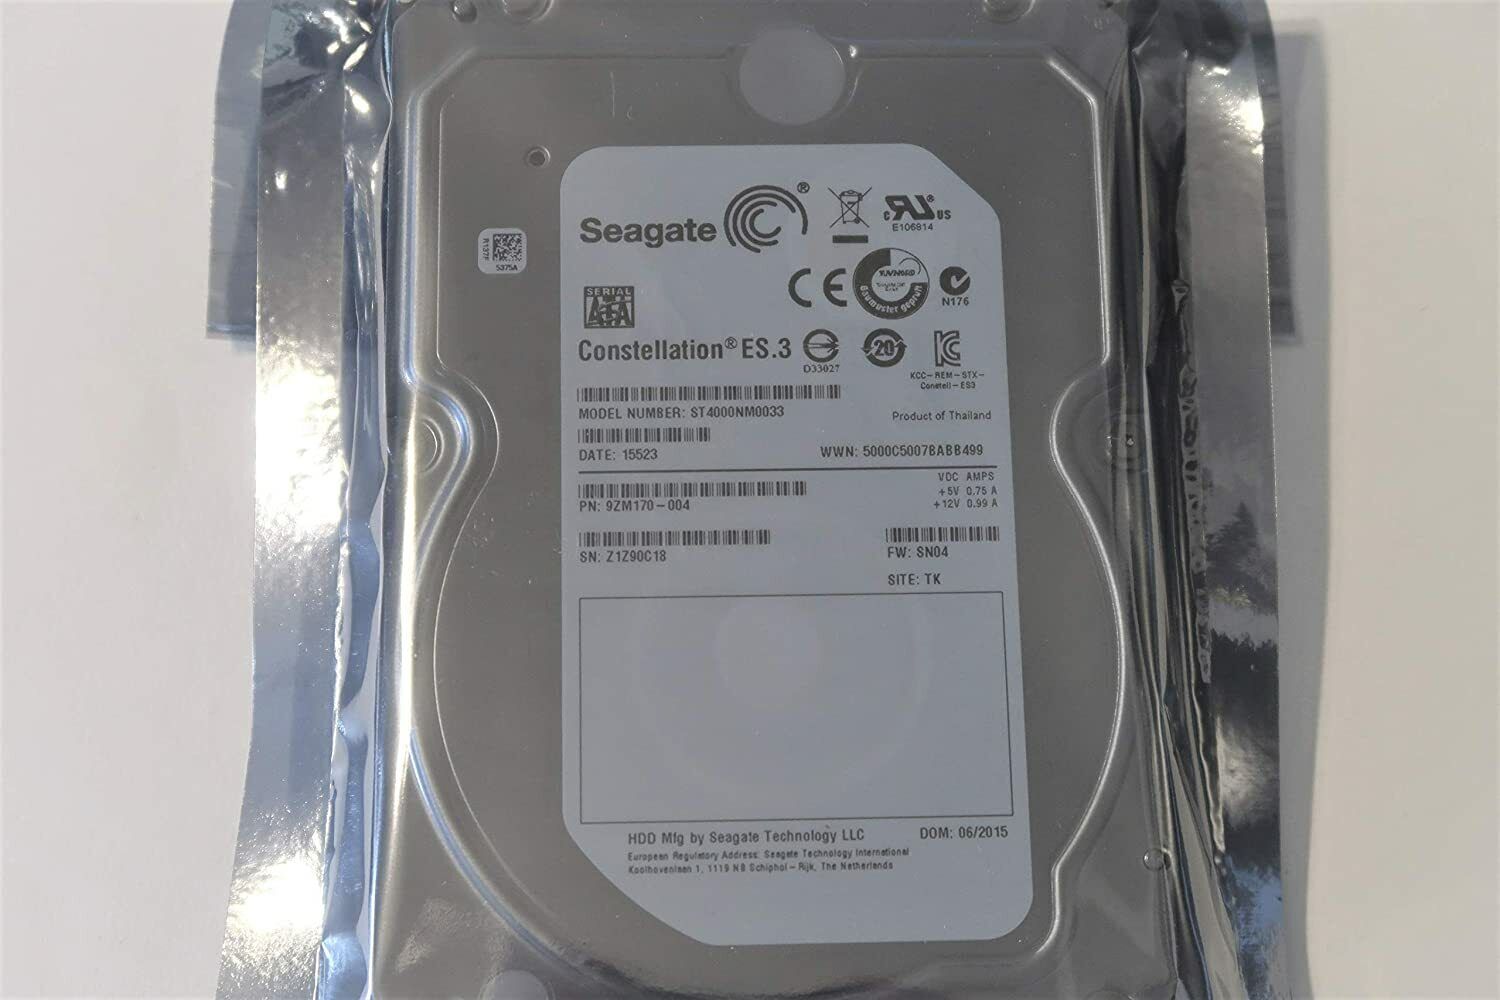 Seagate ES.3 ST4000NM0033 9ZM170-004 SN04 128MB 7200rpm 6.0GB 4.0TB 3.5